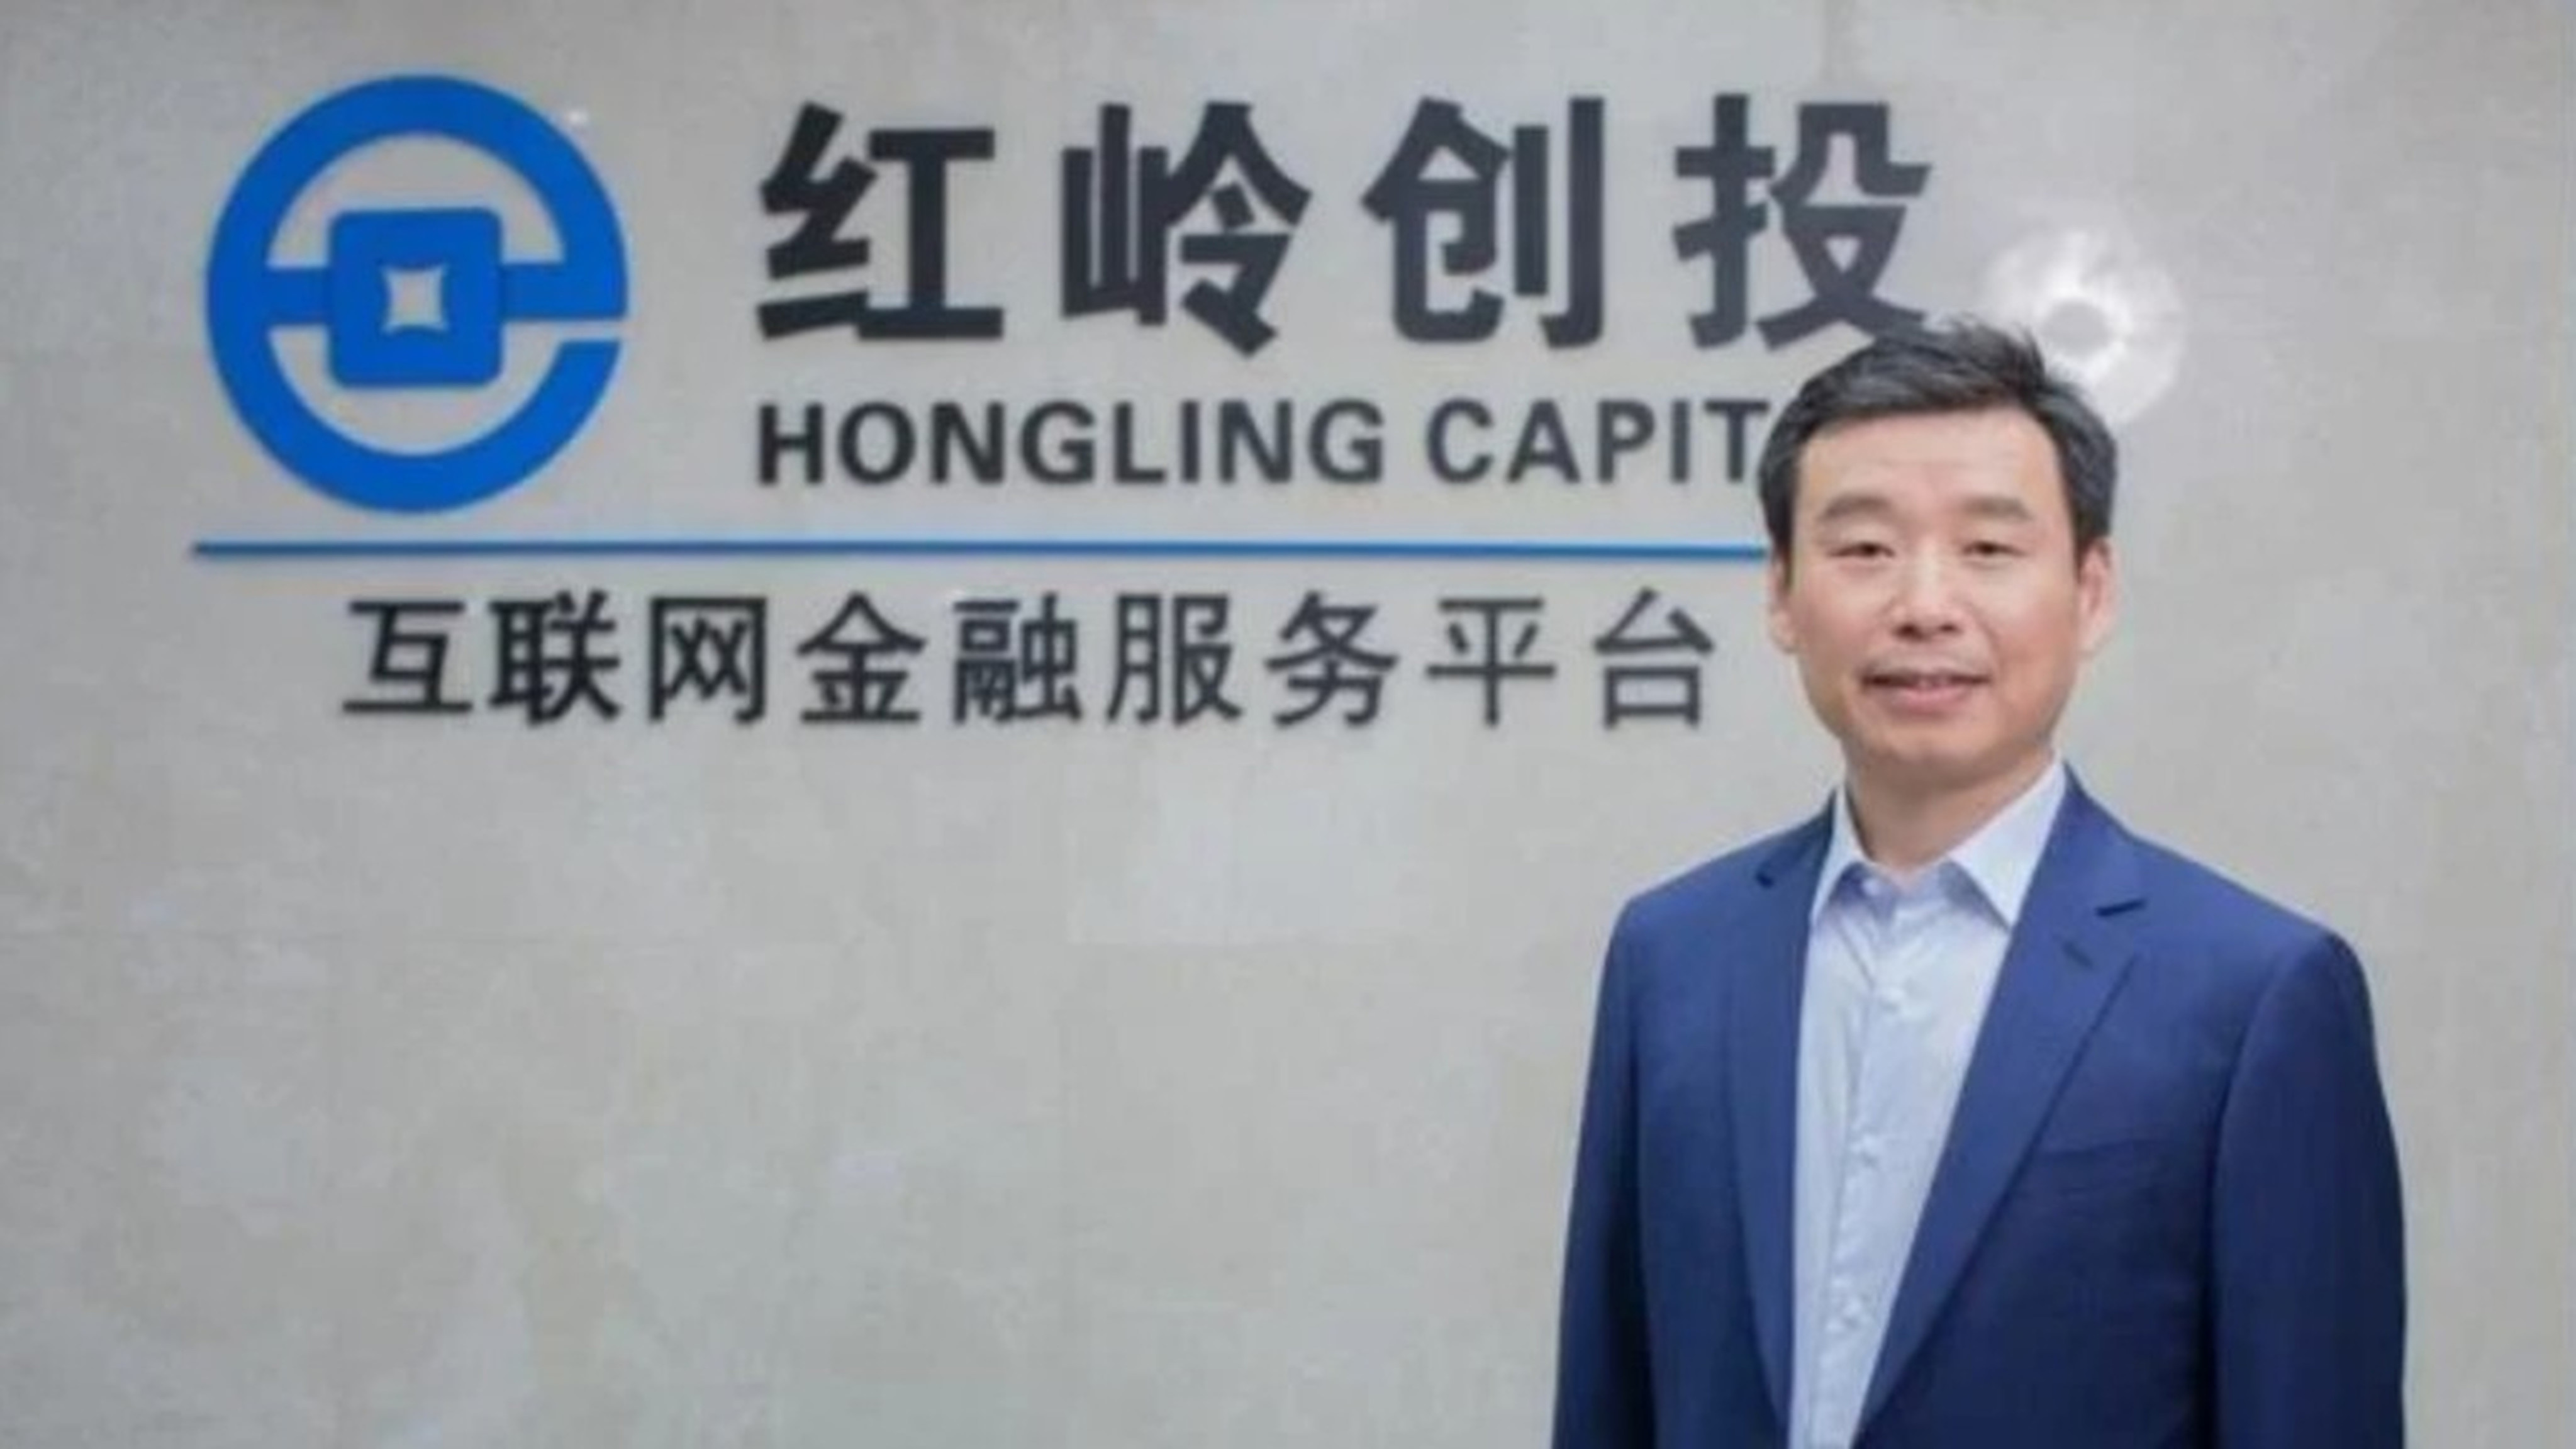 Zhou Shiping of Hongling Capital. Photo: Handout